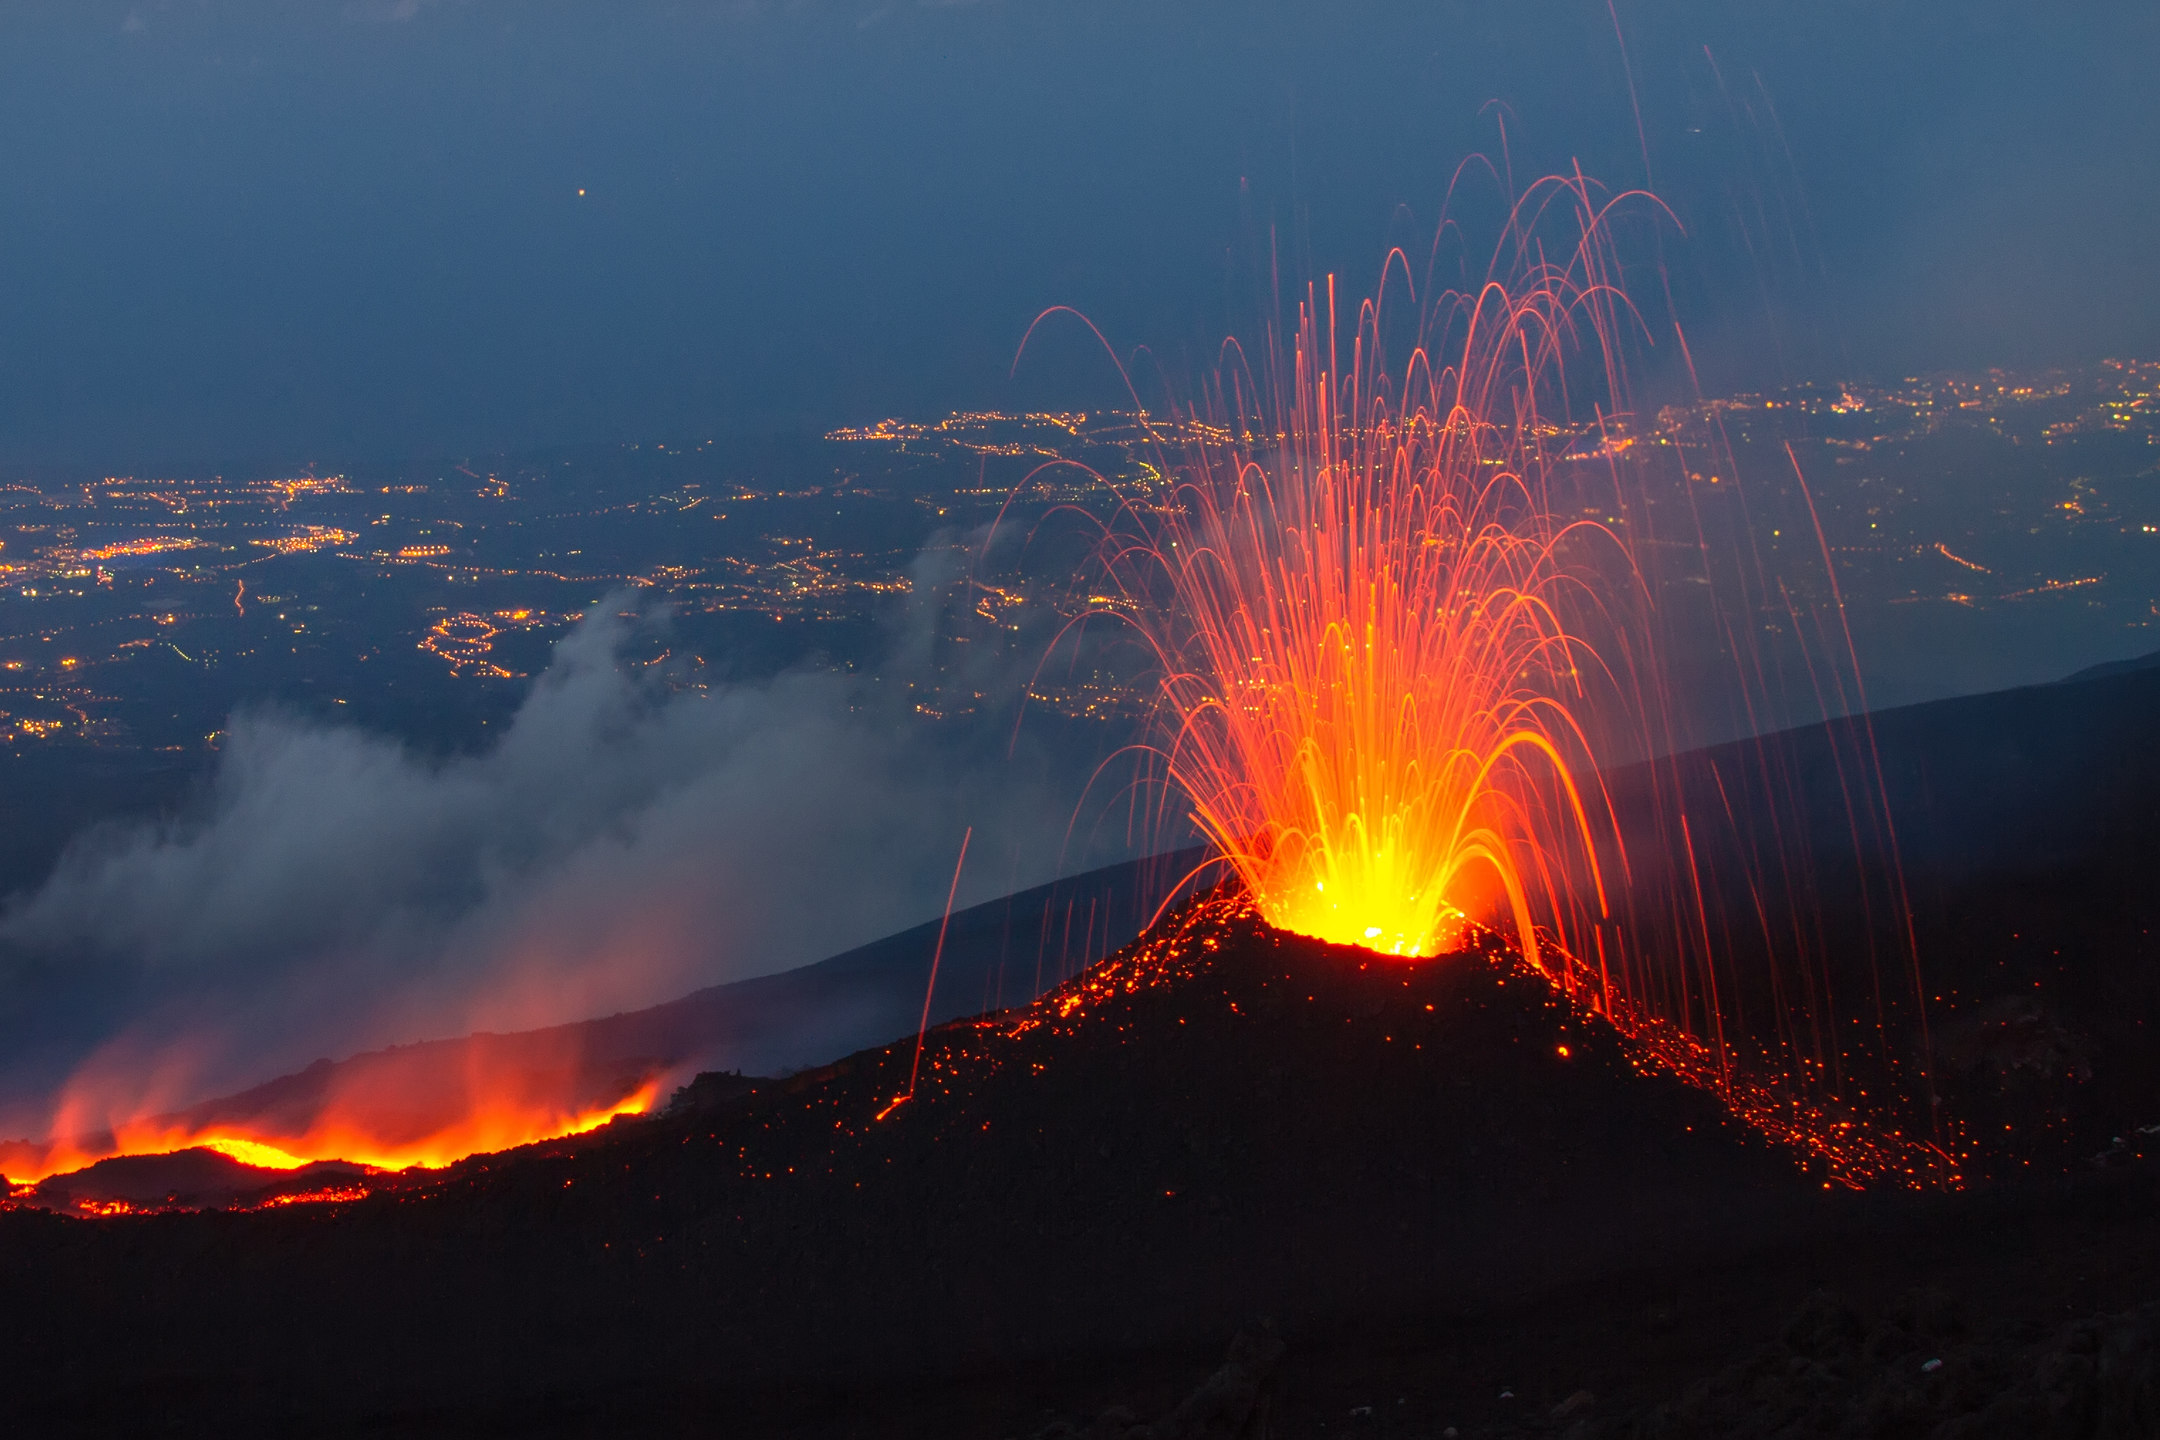 Извержение вулкана Этна